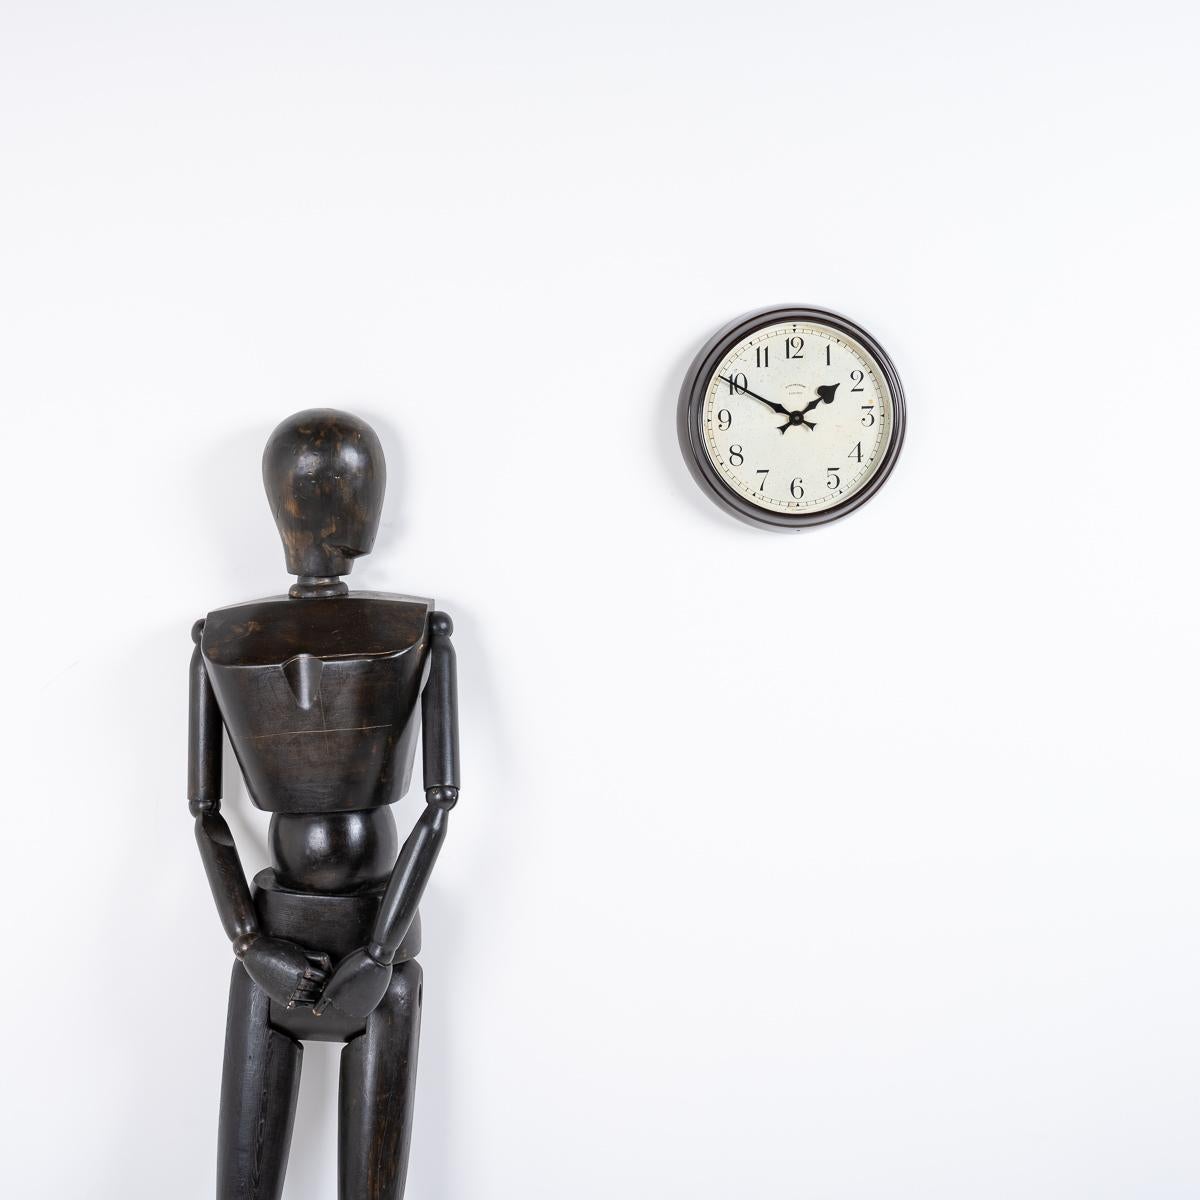 HORLOGE MURALE EN BAKÉLITE PAR SYNCHRONOME

Un spectacle époustouflant  Horloge industrielle fabriquée en Angleterre vers 1940 par Synchronome.

Synchronome était le principal fabricant d'horloges au début et au milieu du 20e siècle, produisant